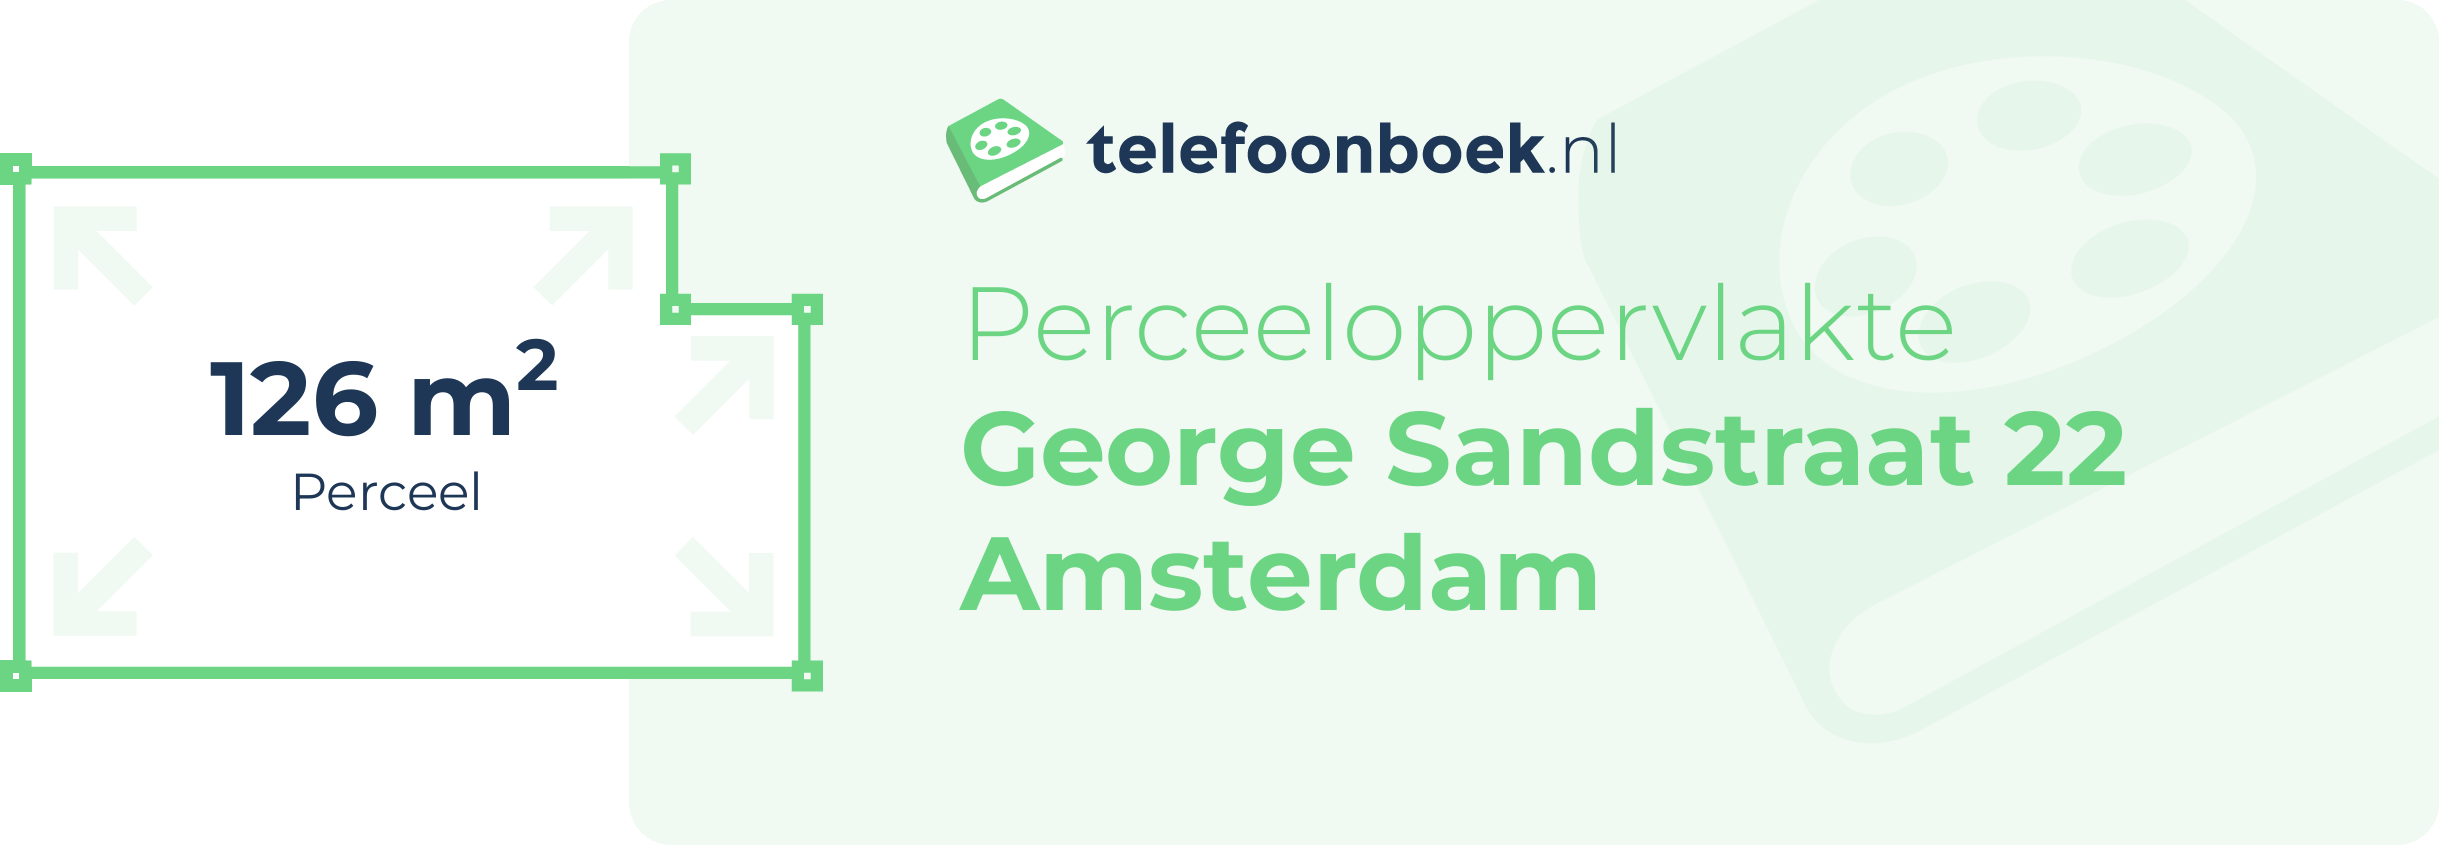 Perceeloppervlakte George Sandstraat 22 Amsterdam